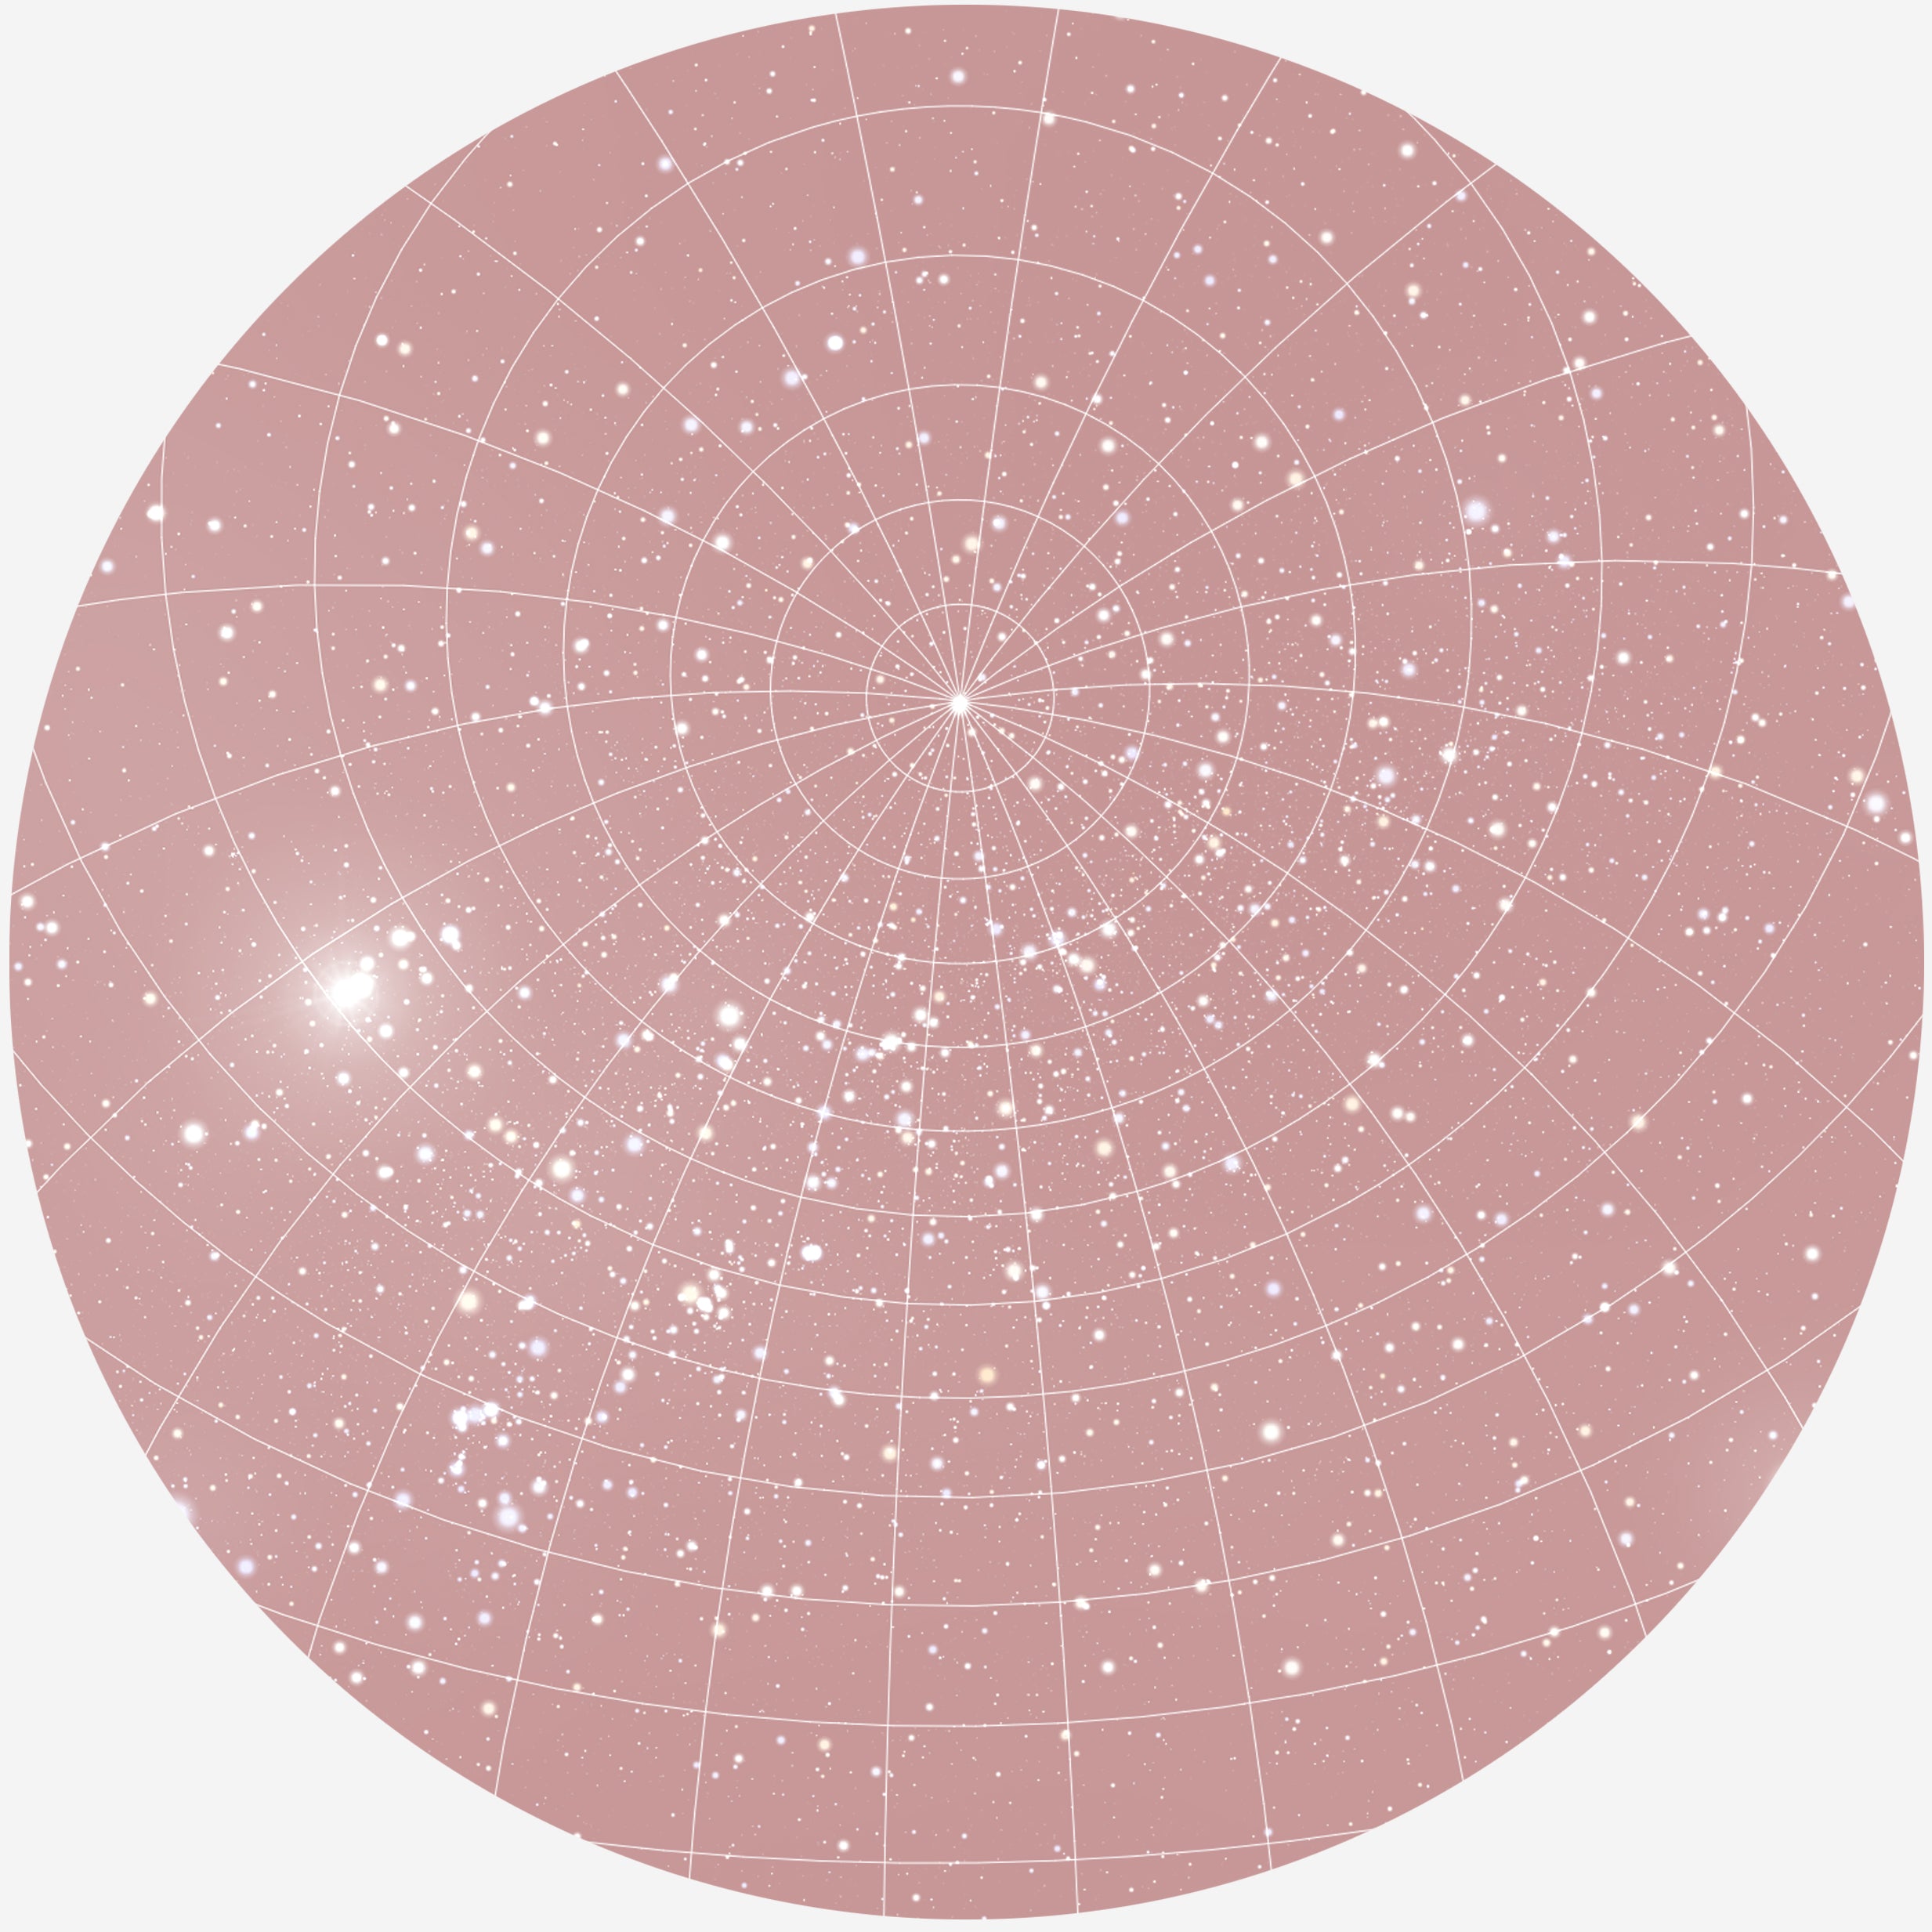 Se RUND PLAKAT MED PERSONLIG STJERNEHIMMEL (BLUSH)) - 30 cm / Stjernehimmel med gitter hos KISPUS